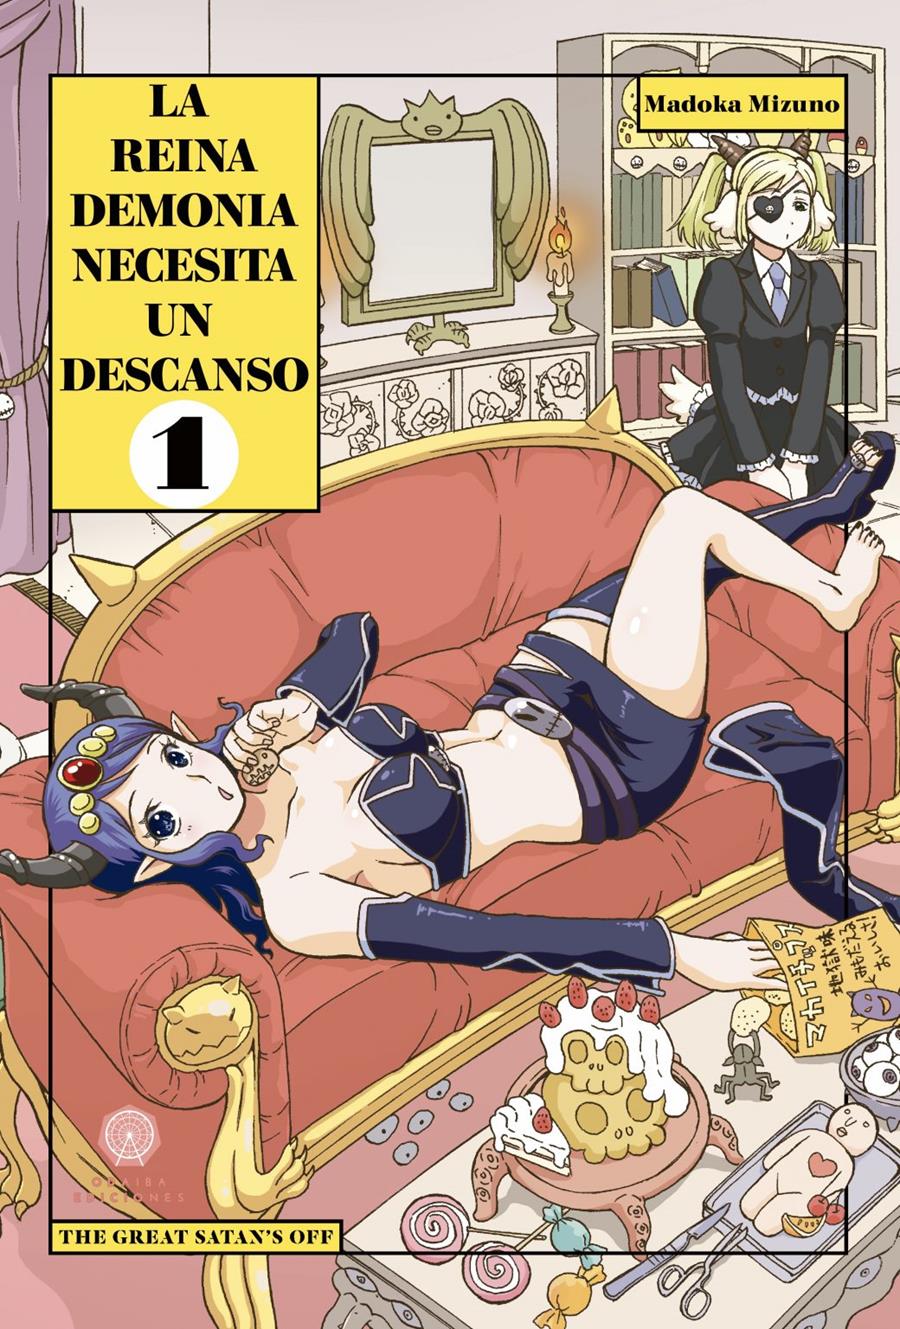 La Reina Demonia necesita un descanso vol.1 | N0421-OTED12 | Madoka Mizuno | Terra de Còmic - Tu tienda de cómics online especializada en cómics, manga y merchandising